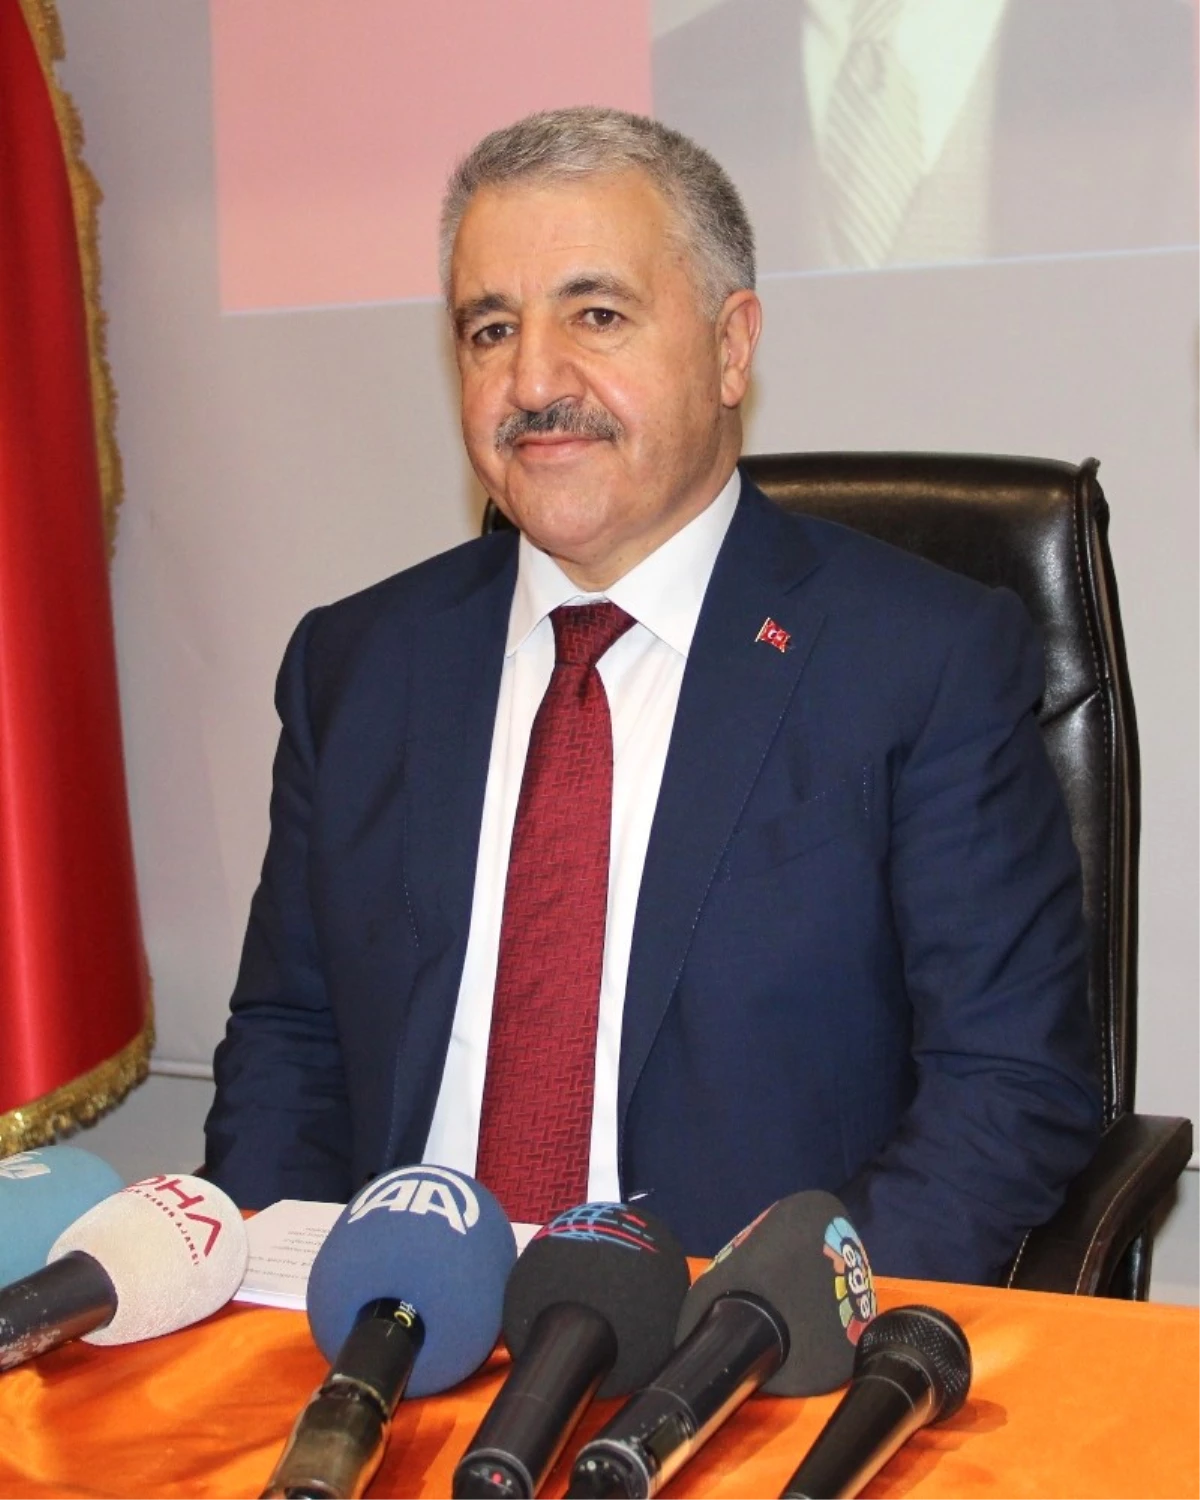 Ulaştırma Bakanı Arslan: "Hayır Diyerek Hayatı Kolaylaştıramazsınız"